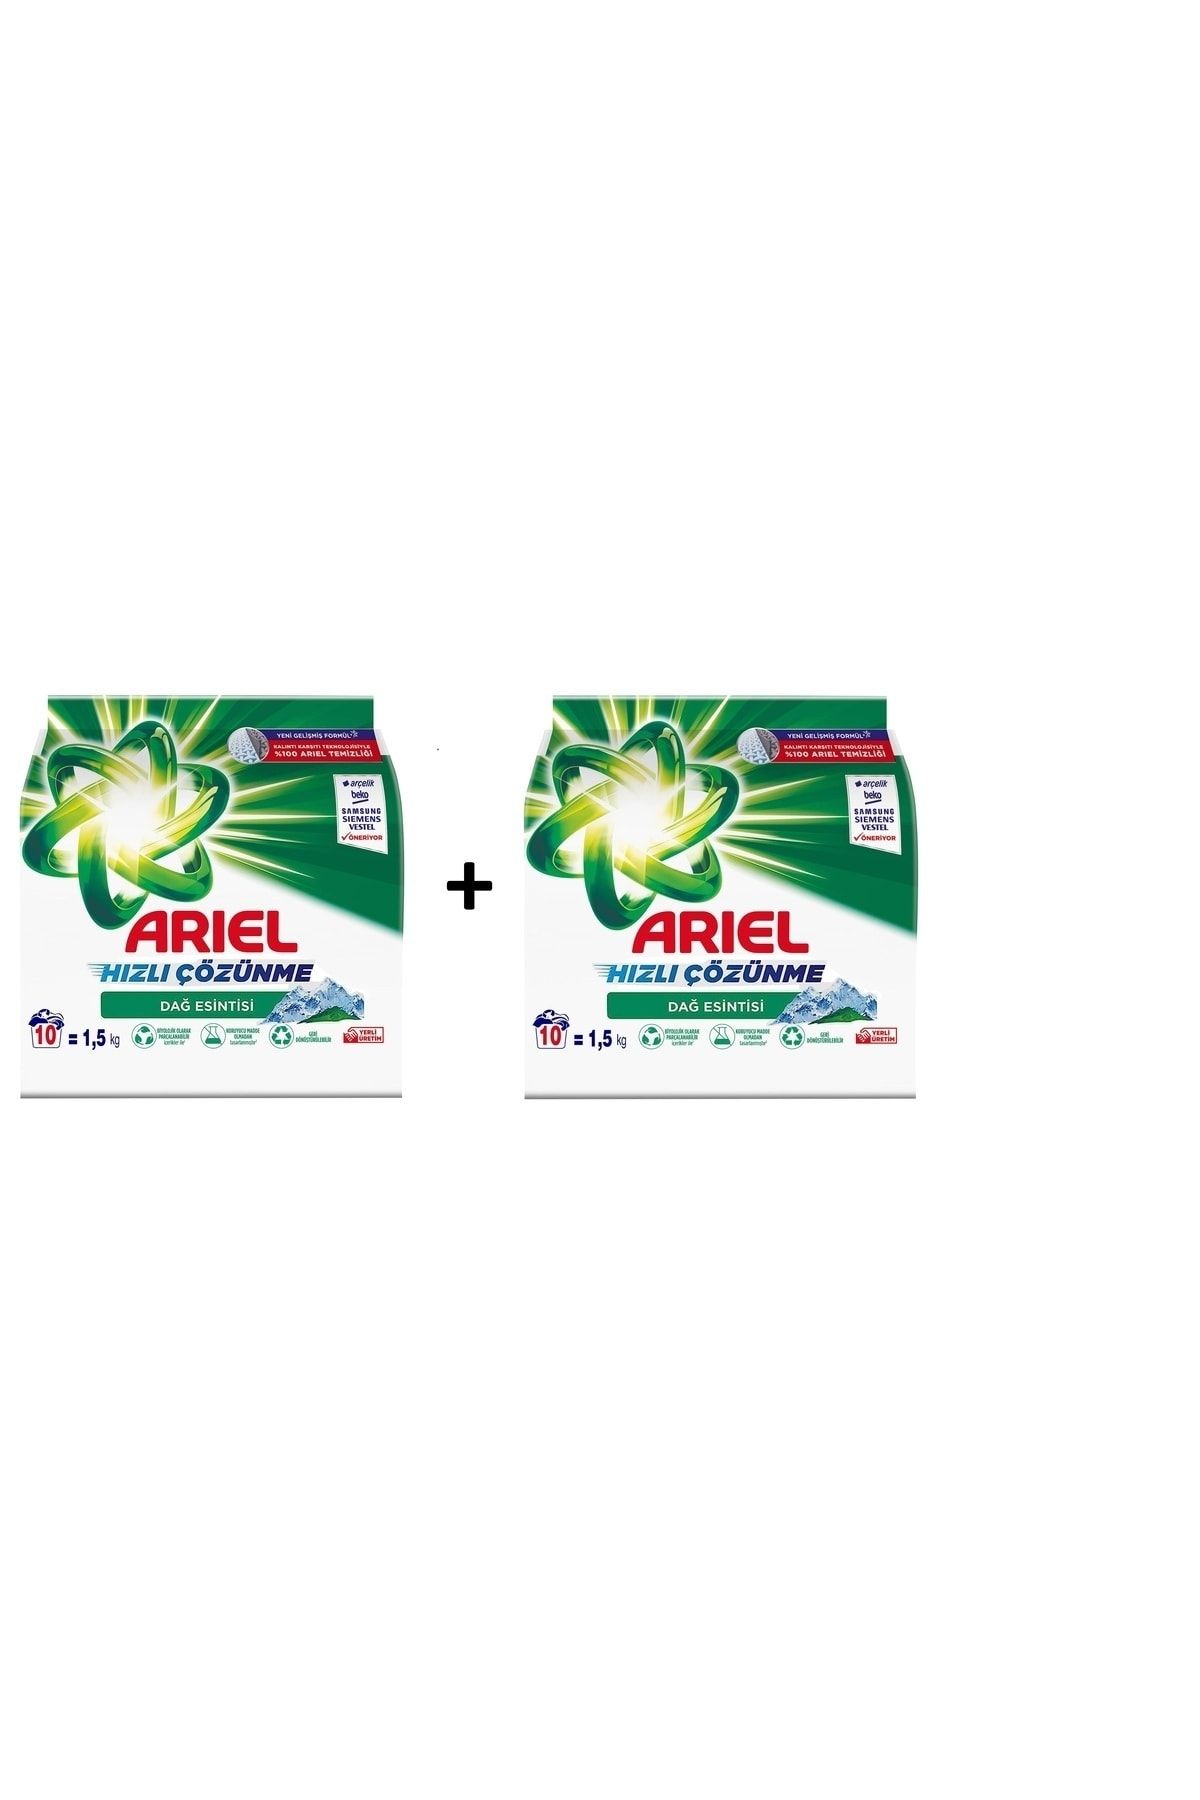 Ariel Toz Deterjan Beyazlar Için Hızlı Çözünme Dağ Esintisi 1.5 Kg X 2 Li Set